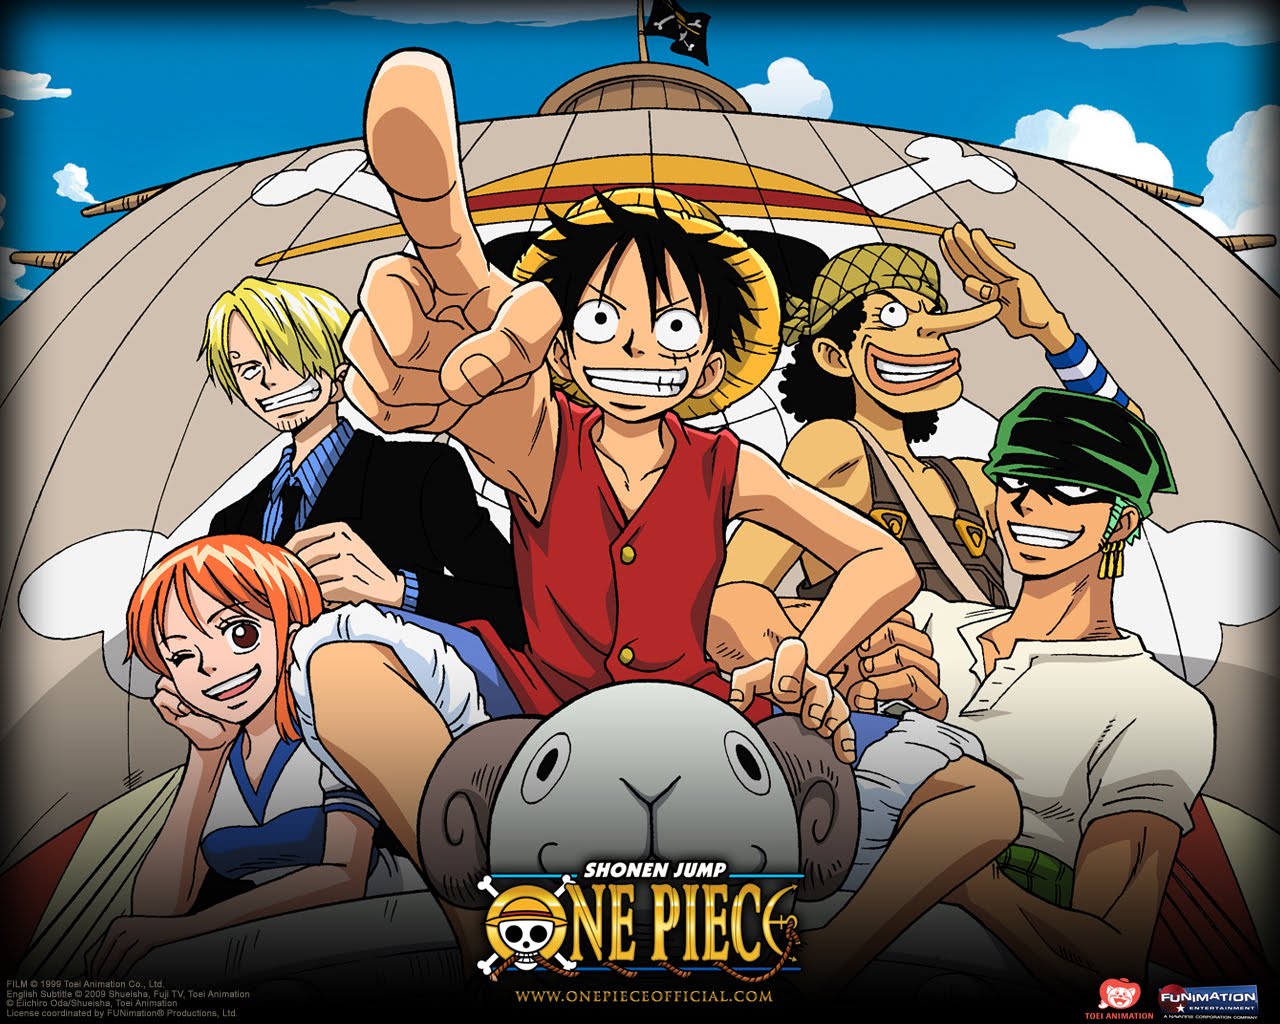 SAIUU!🔴 Como Assistir One Piece Dublado De Graça No Celular #onepiece